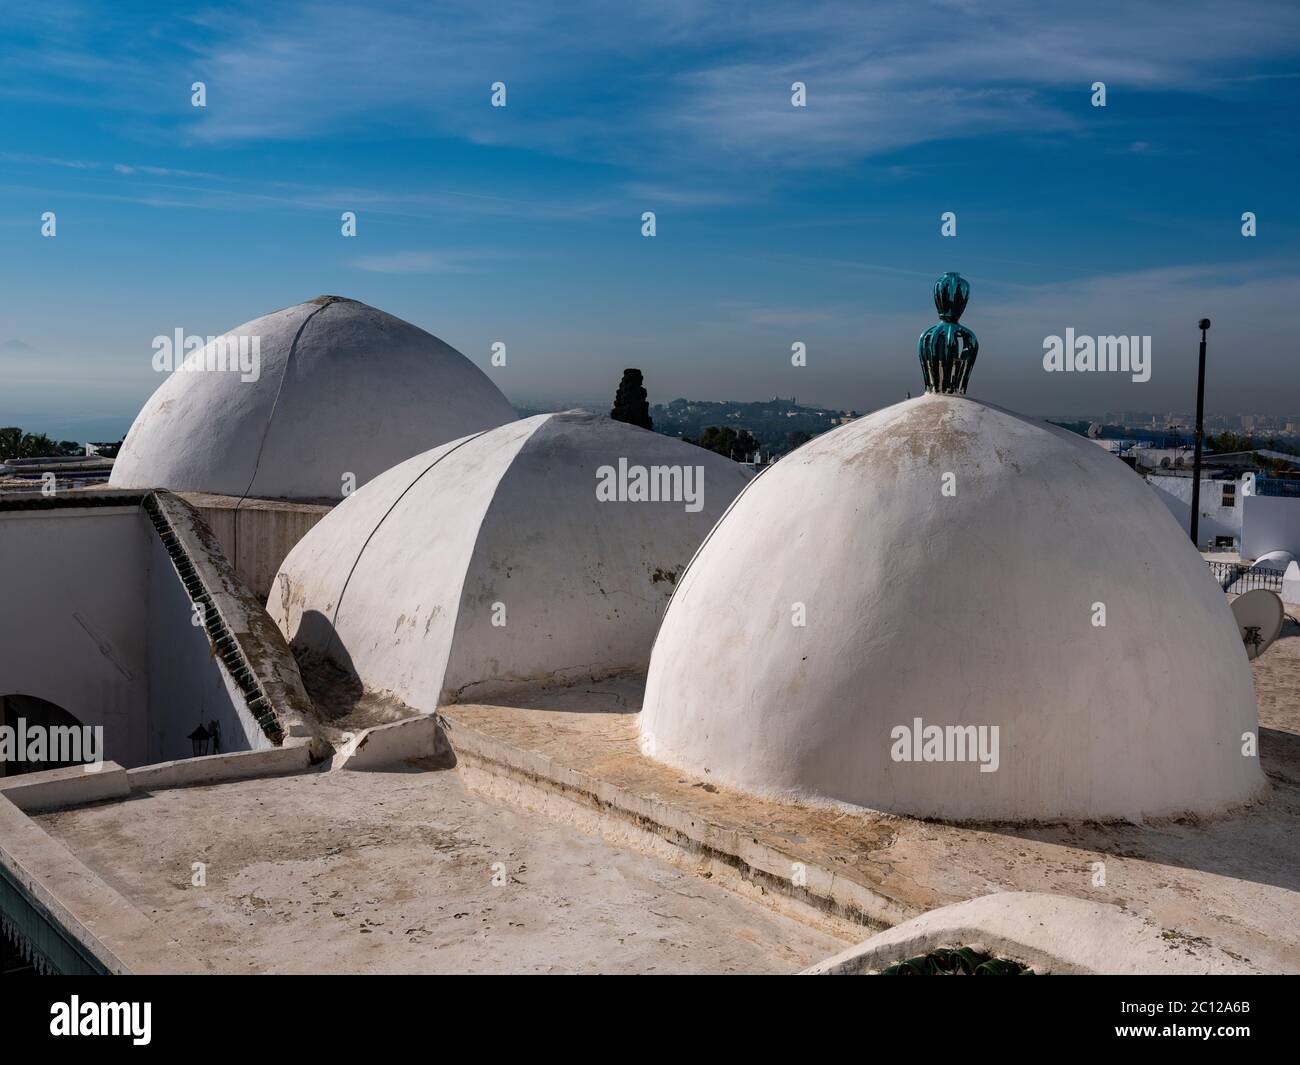 Dômes blancs d'une mosquée locale sur son toit dans la ville traditionnelle de Sidi Bou dit sur la côte méditerranéenne de la Tunisie Banque D'Images